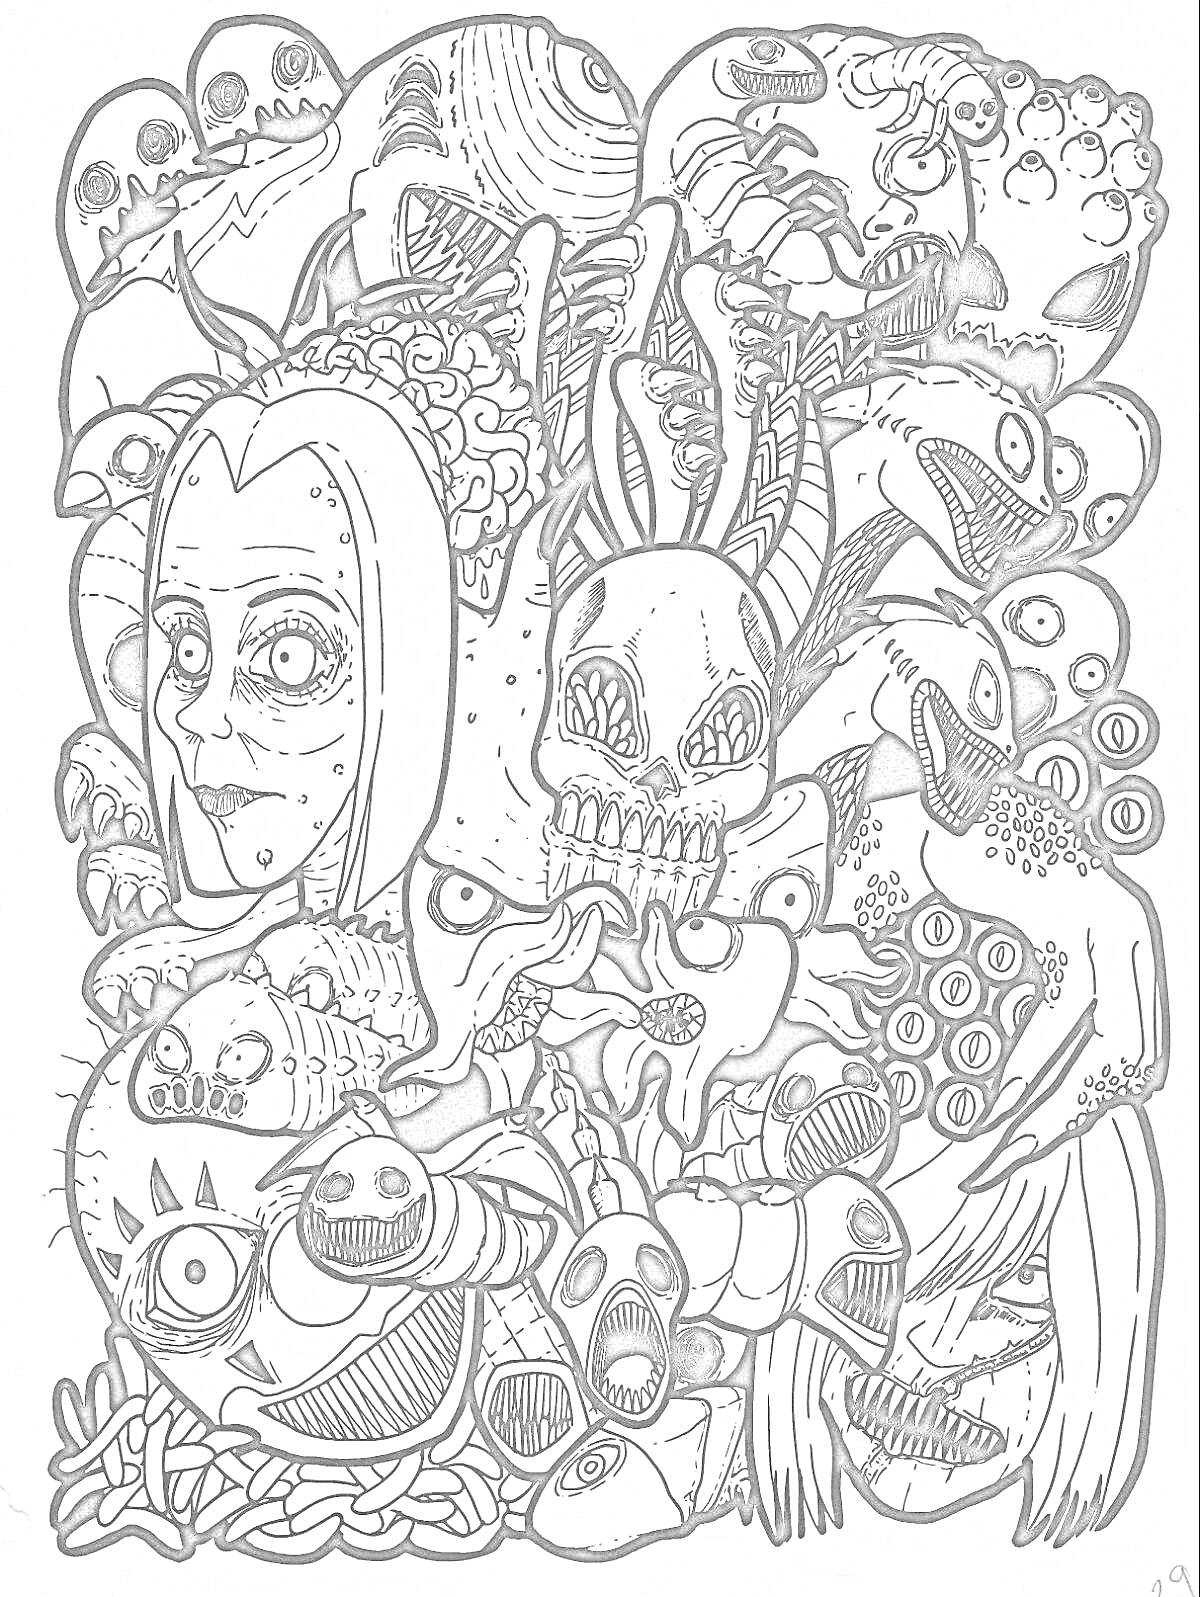 Раскраска Психоделические существа и лица, мозг, череп с кроличьими ушами, глаза, странные животные, фантастические элементы